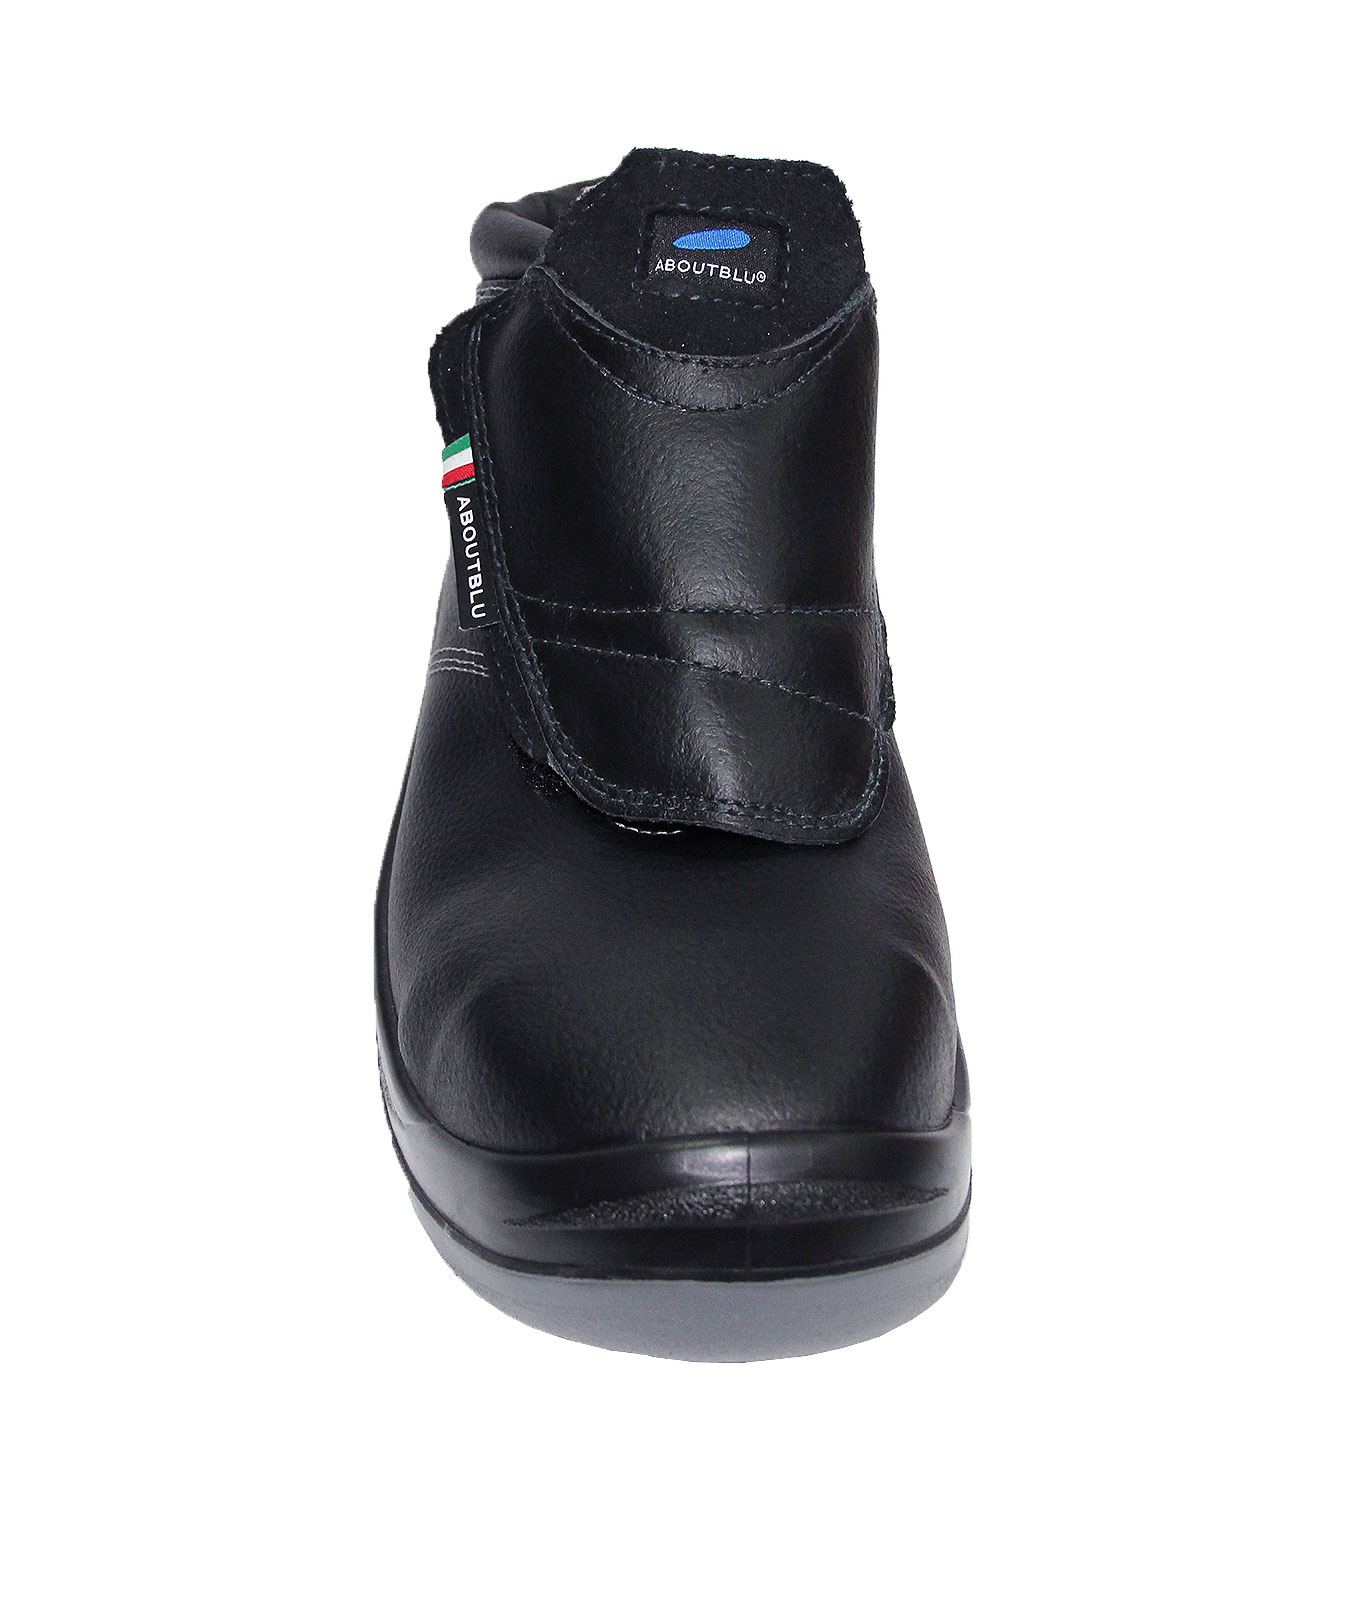 Παπούτσι ηλεκτρολόγων URAGANO S3 (3)